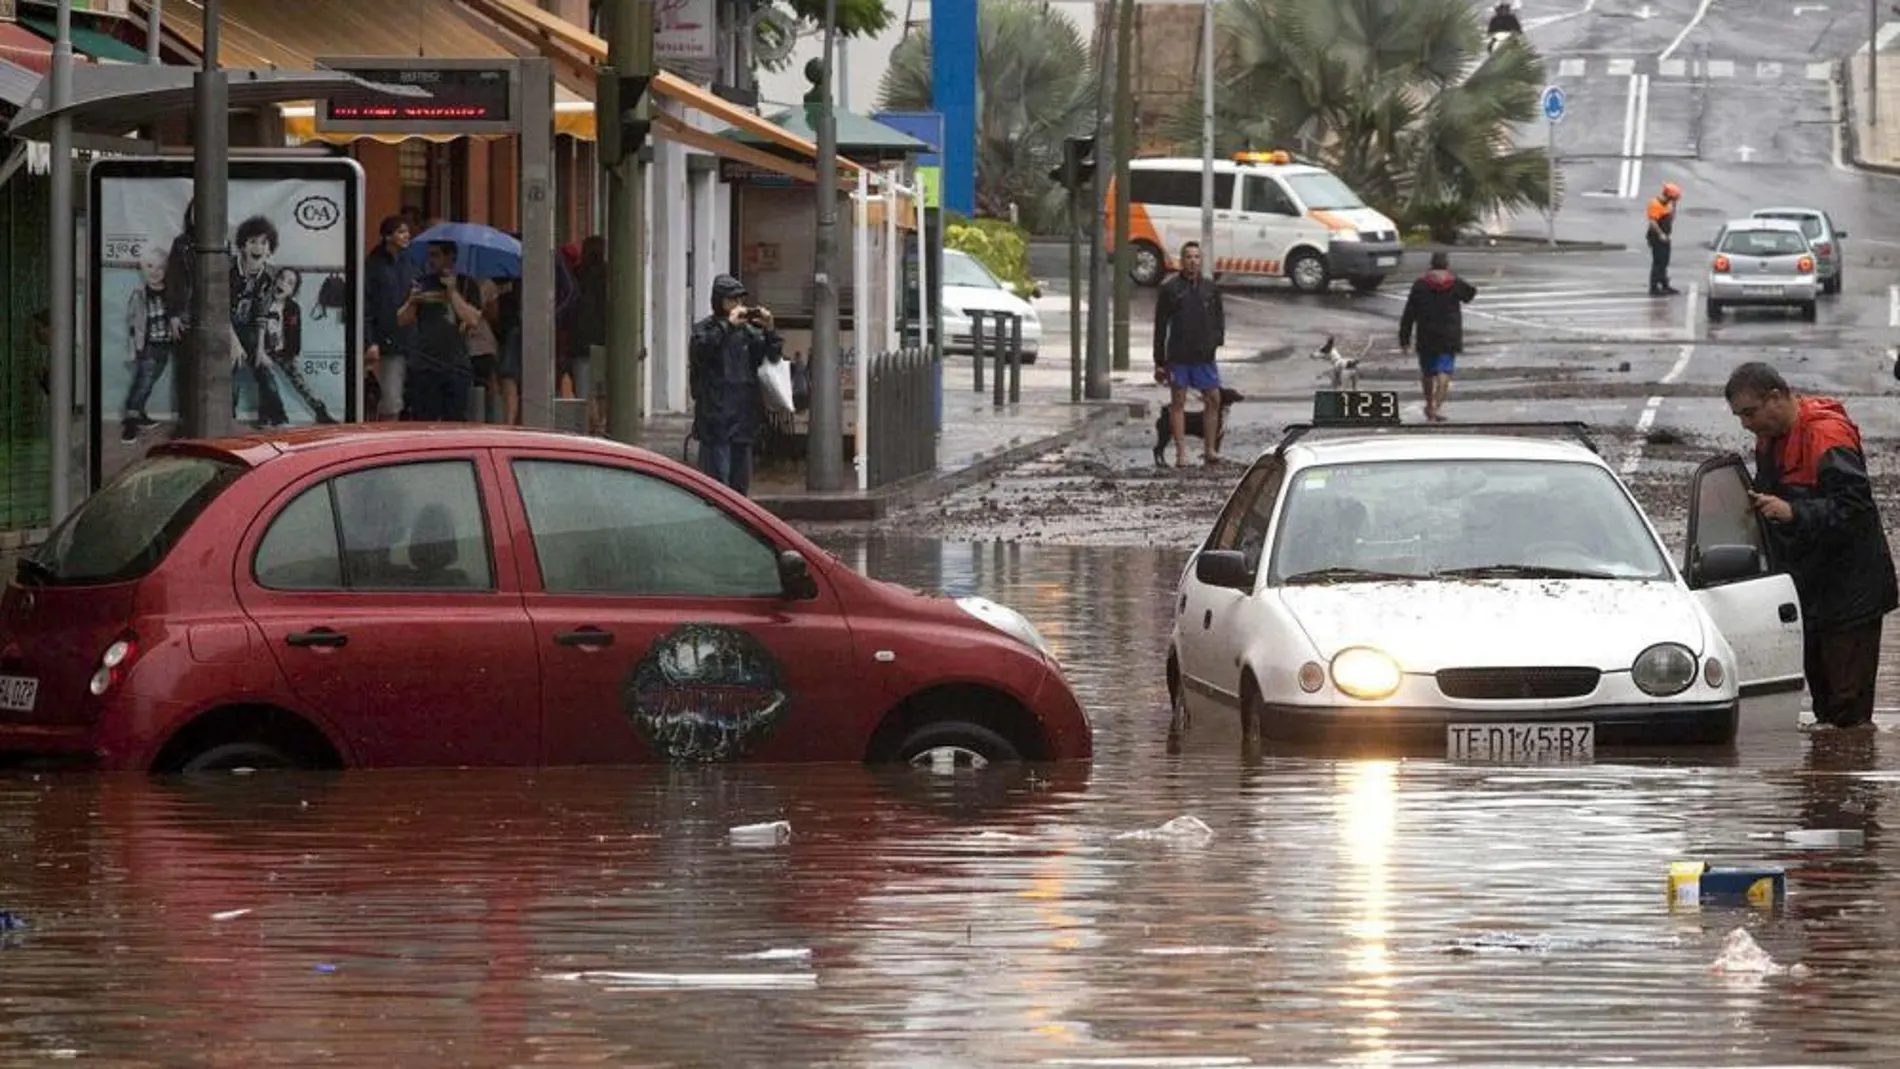 Vehículos atrapados en Santa Cruz de Tenerife a consecuencia de la tromba de agua que ha caído en las últimas horas.